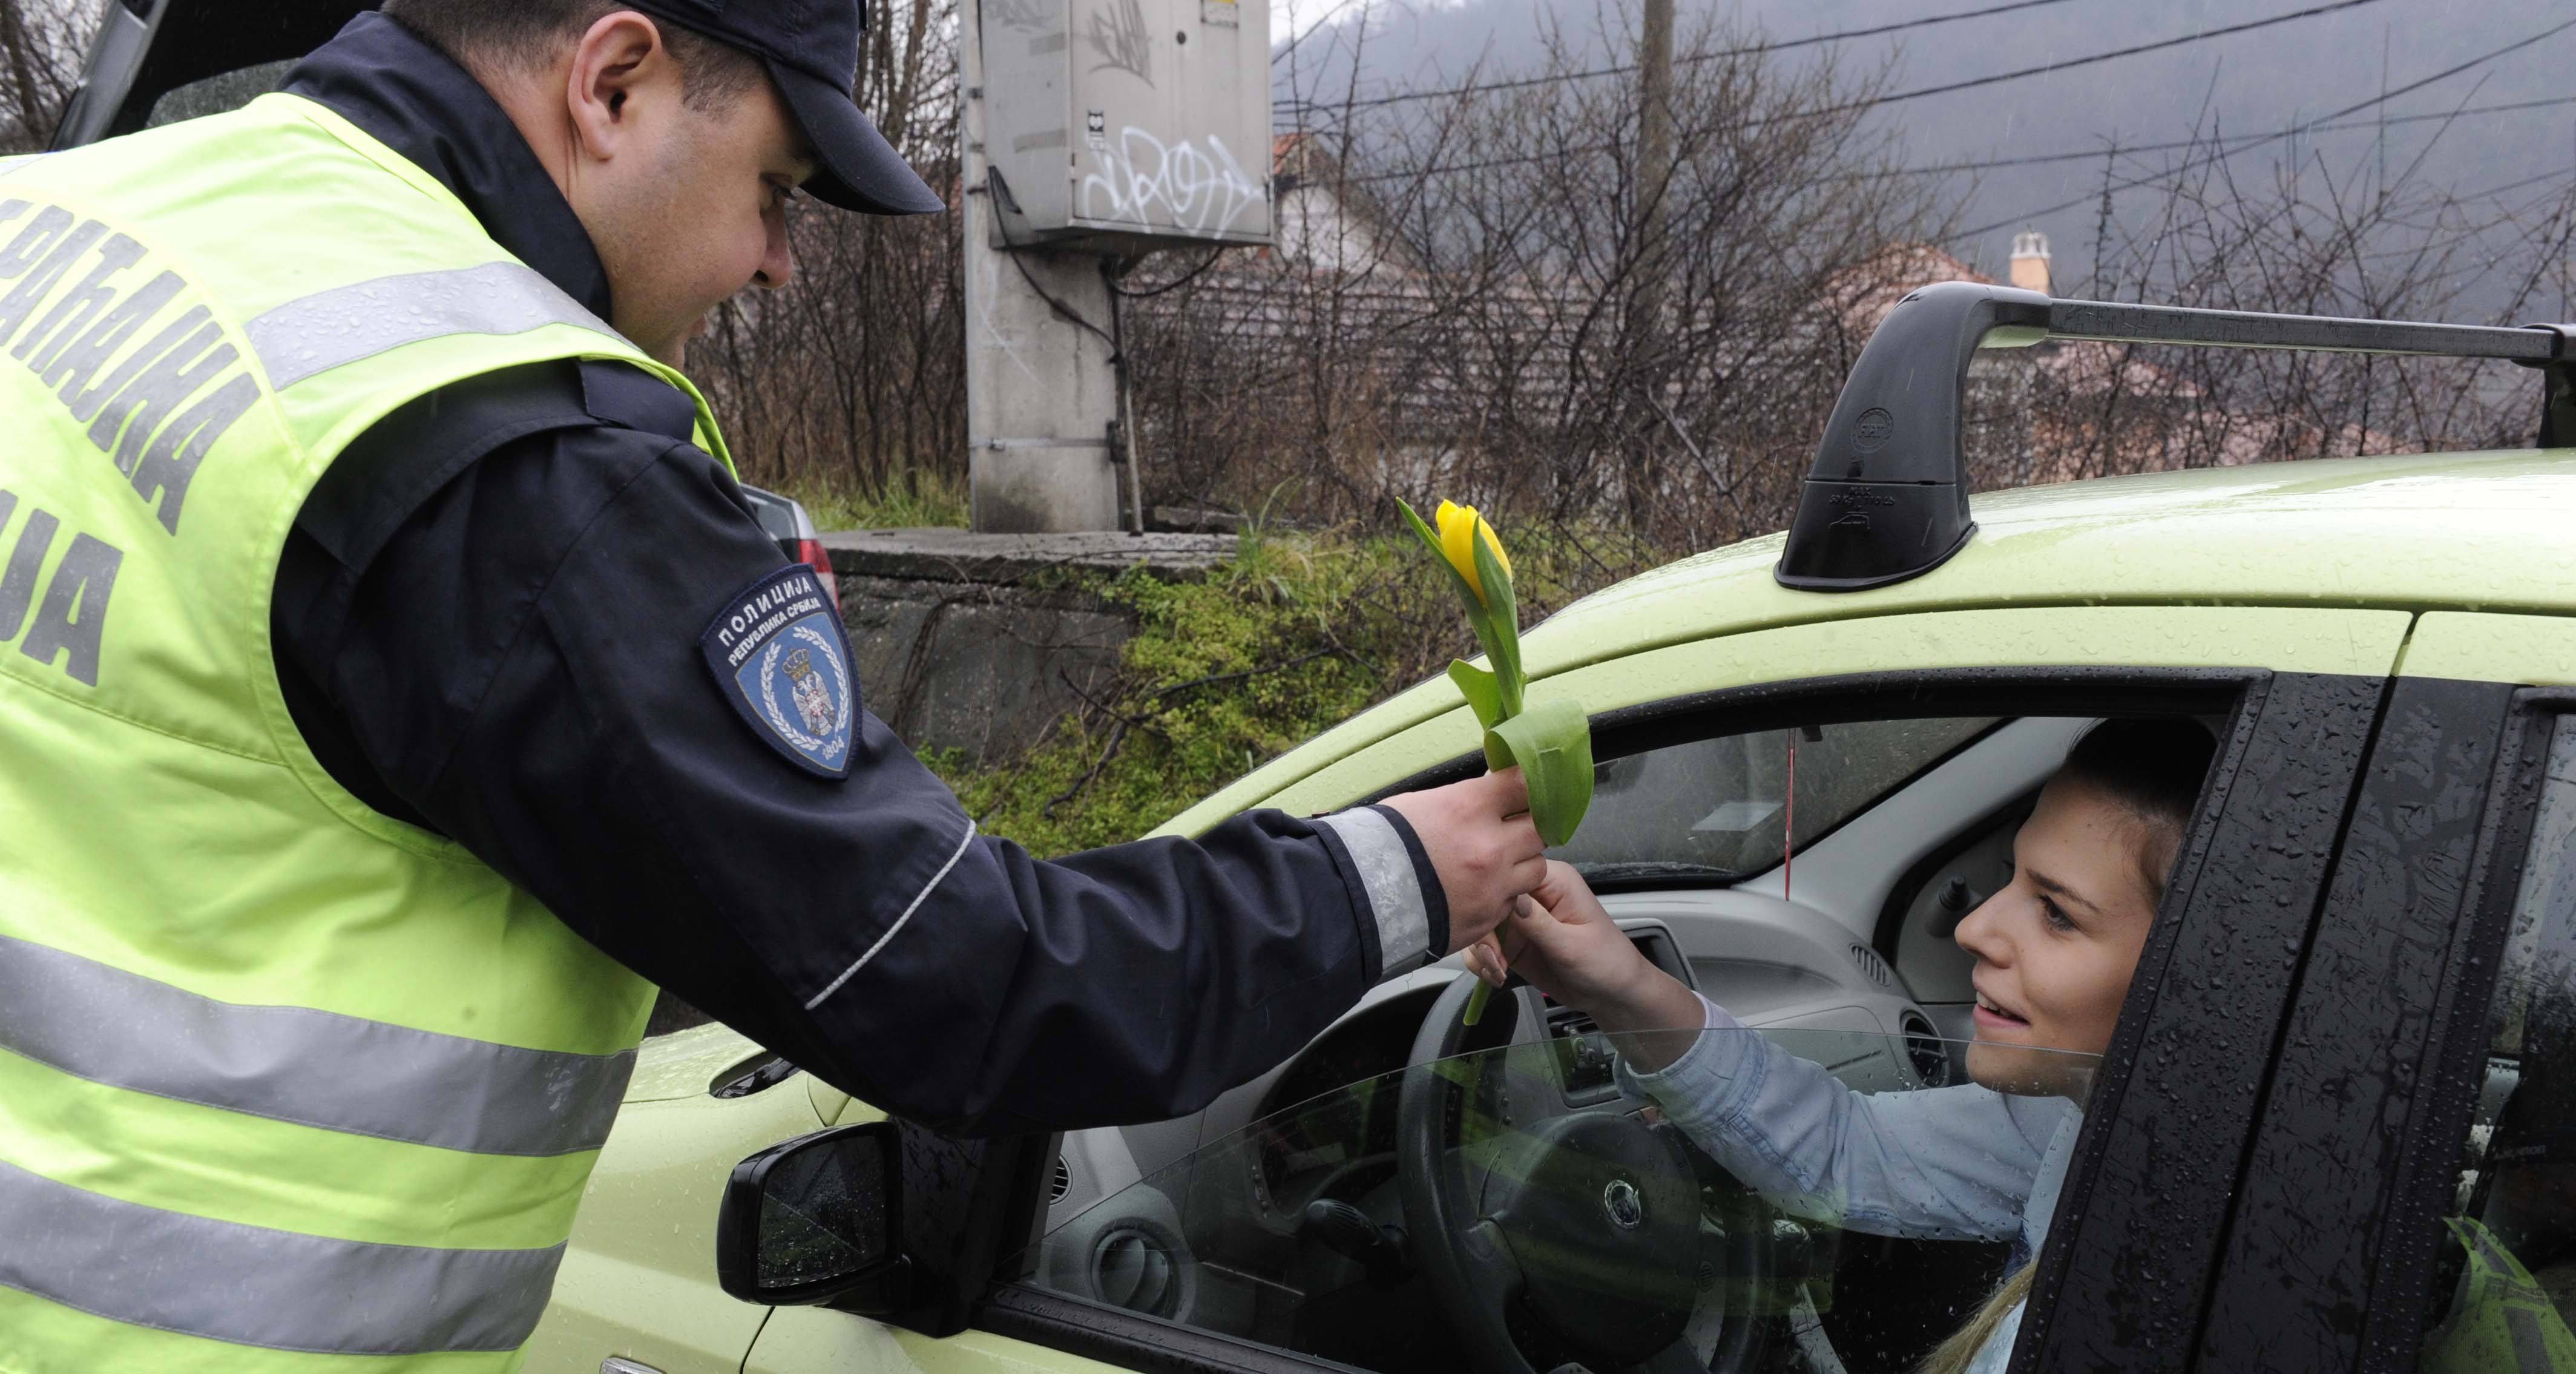 Saobraćajni policajci prijatno iznenadili žene vozače cvećem i čestitkom za 8. mart